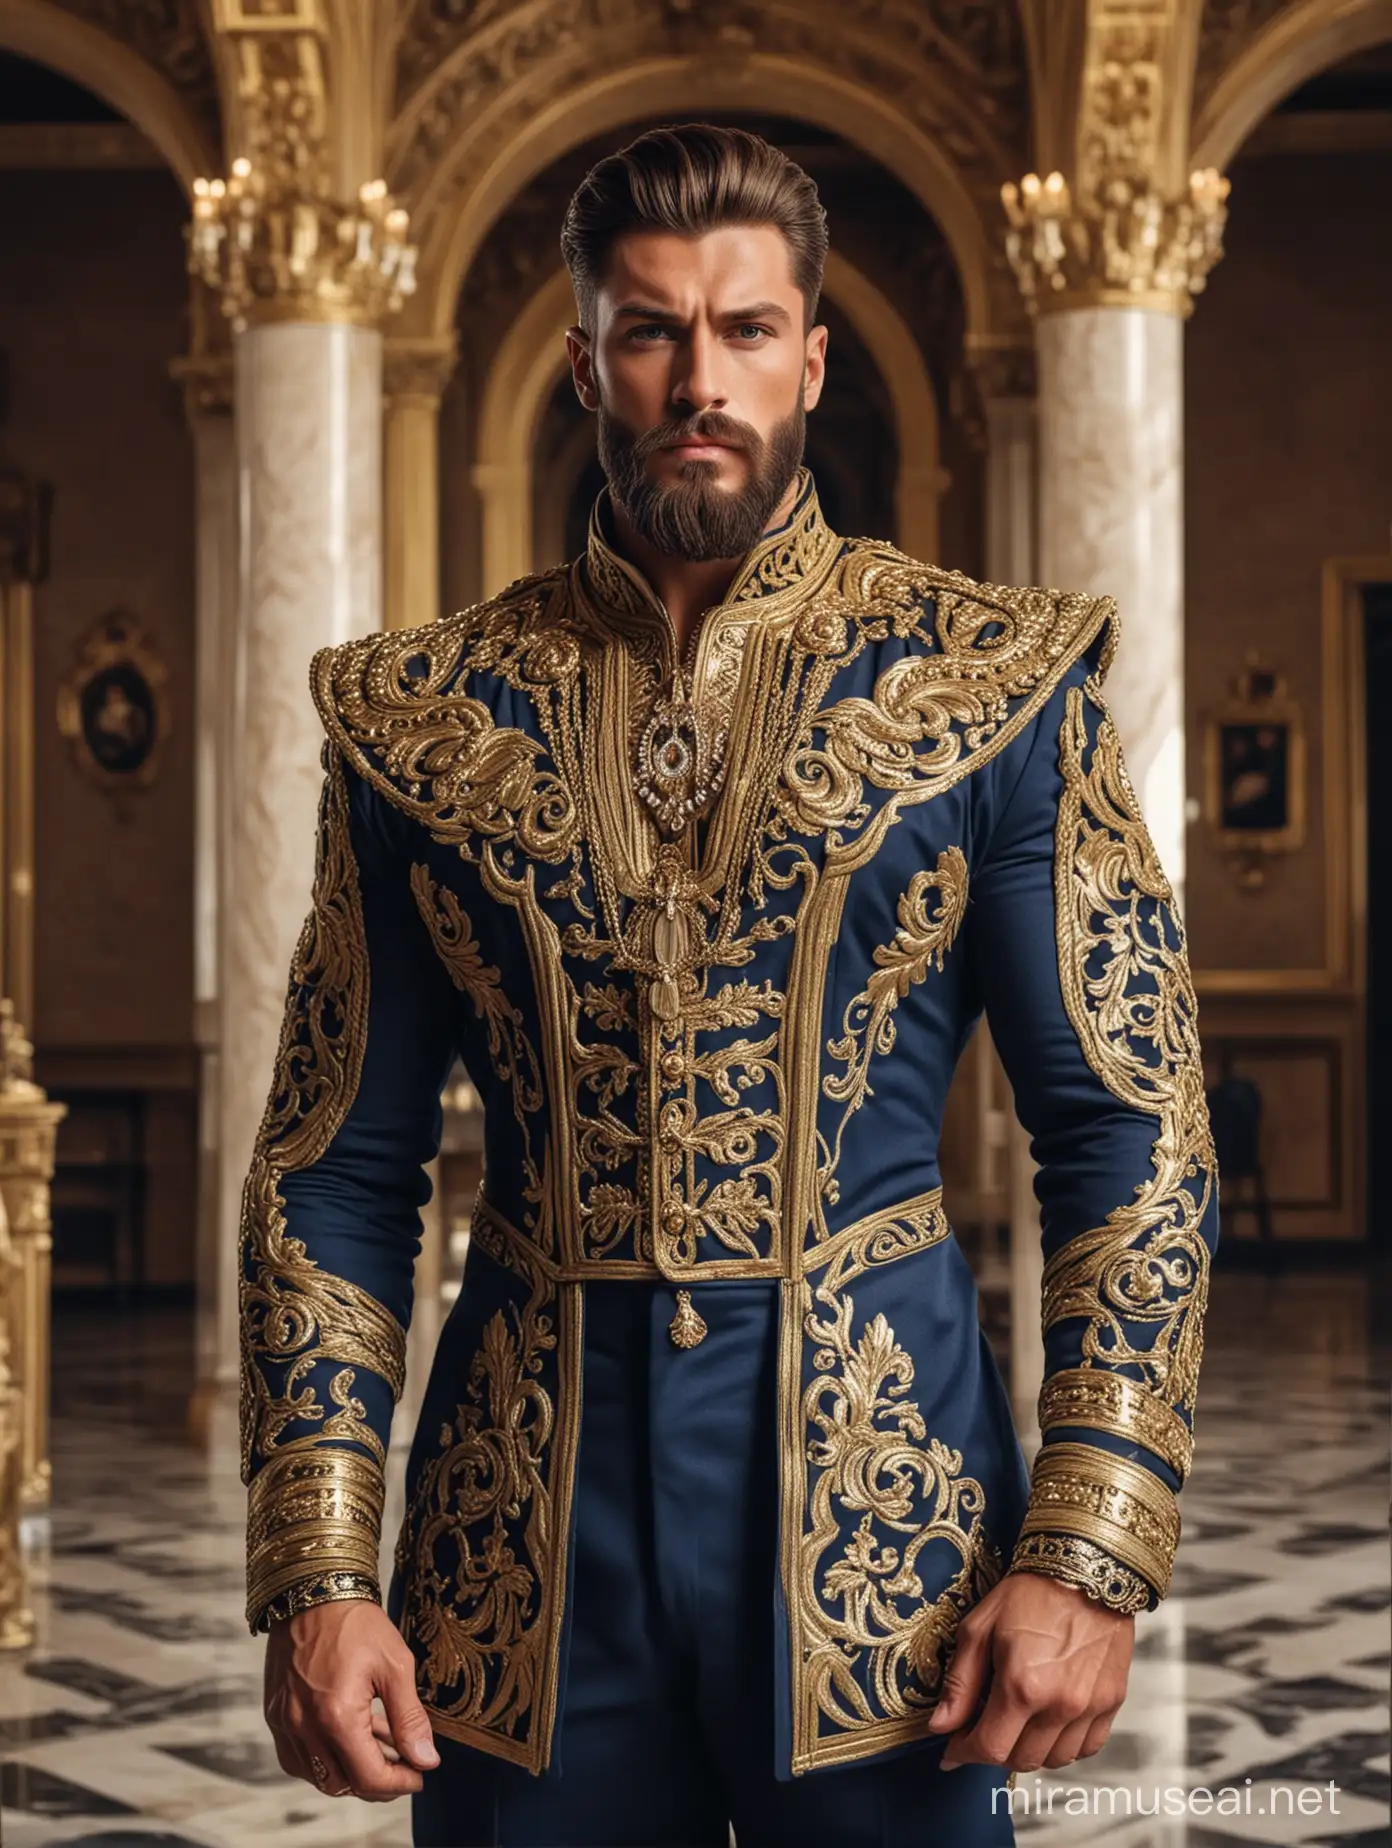 Majestic Bodybuilder King in Designer Navy and Golden Cavalry Suit